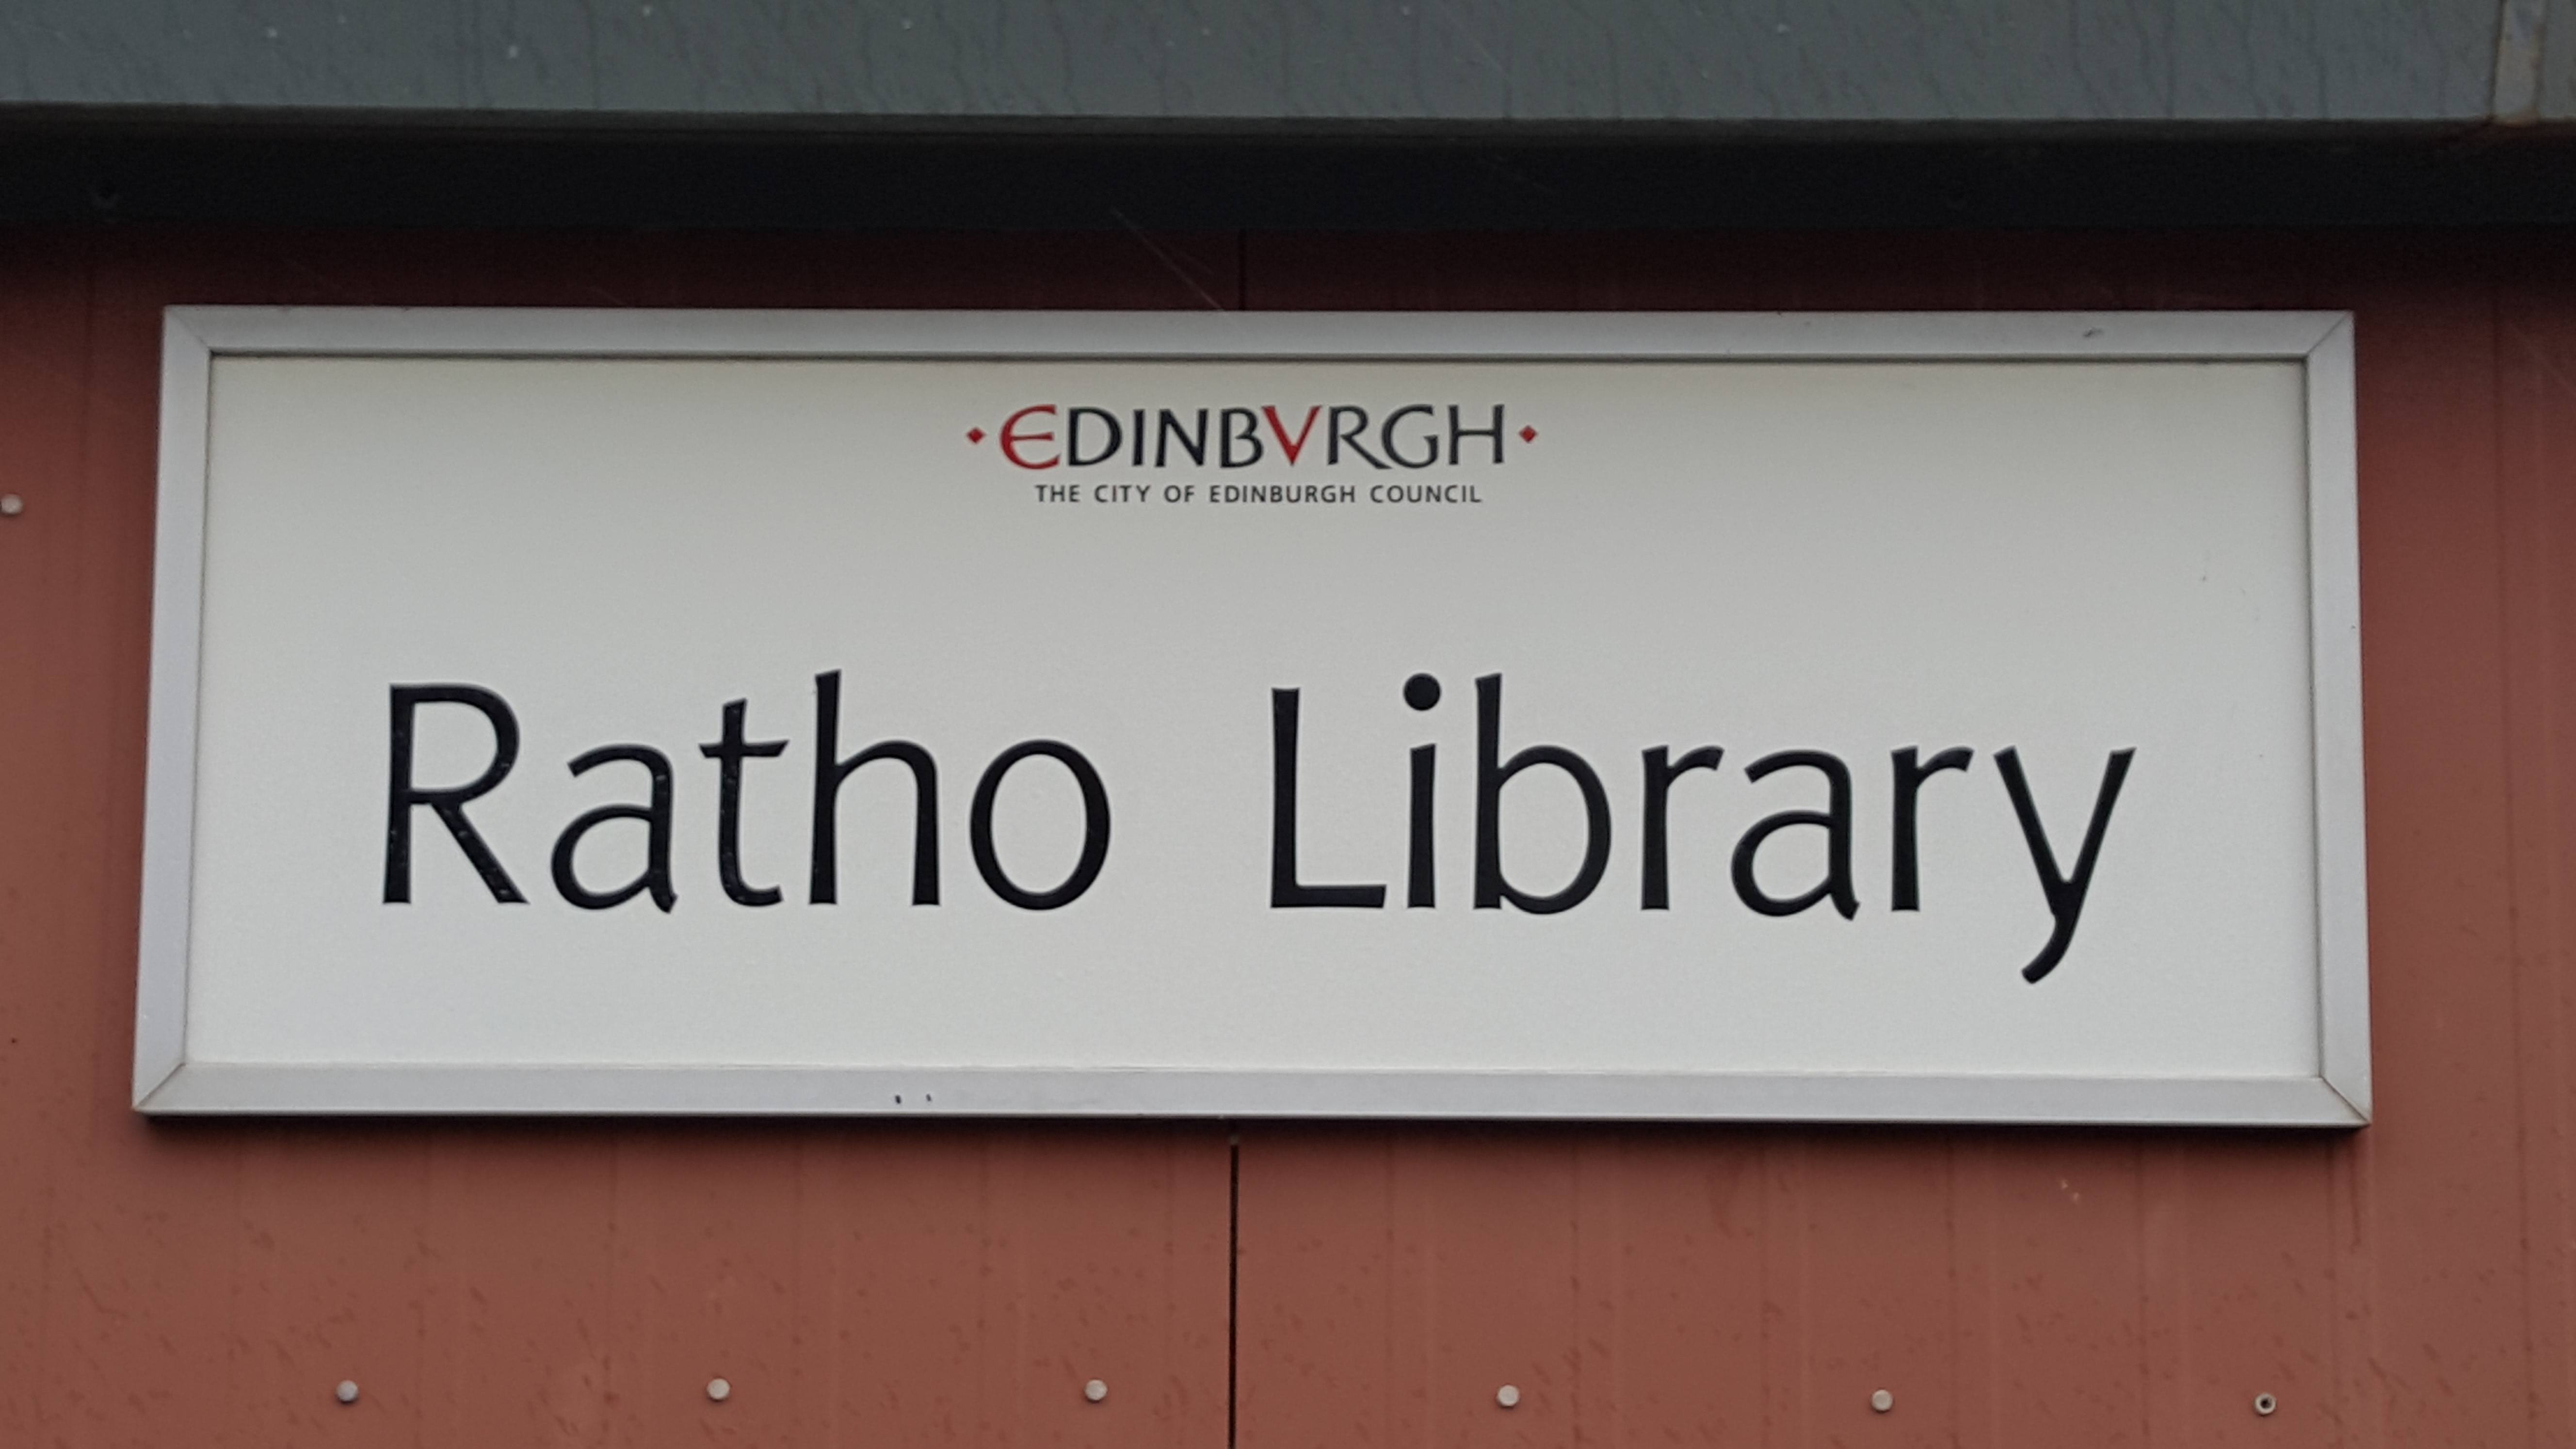 Ratho Library